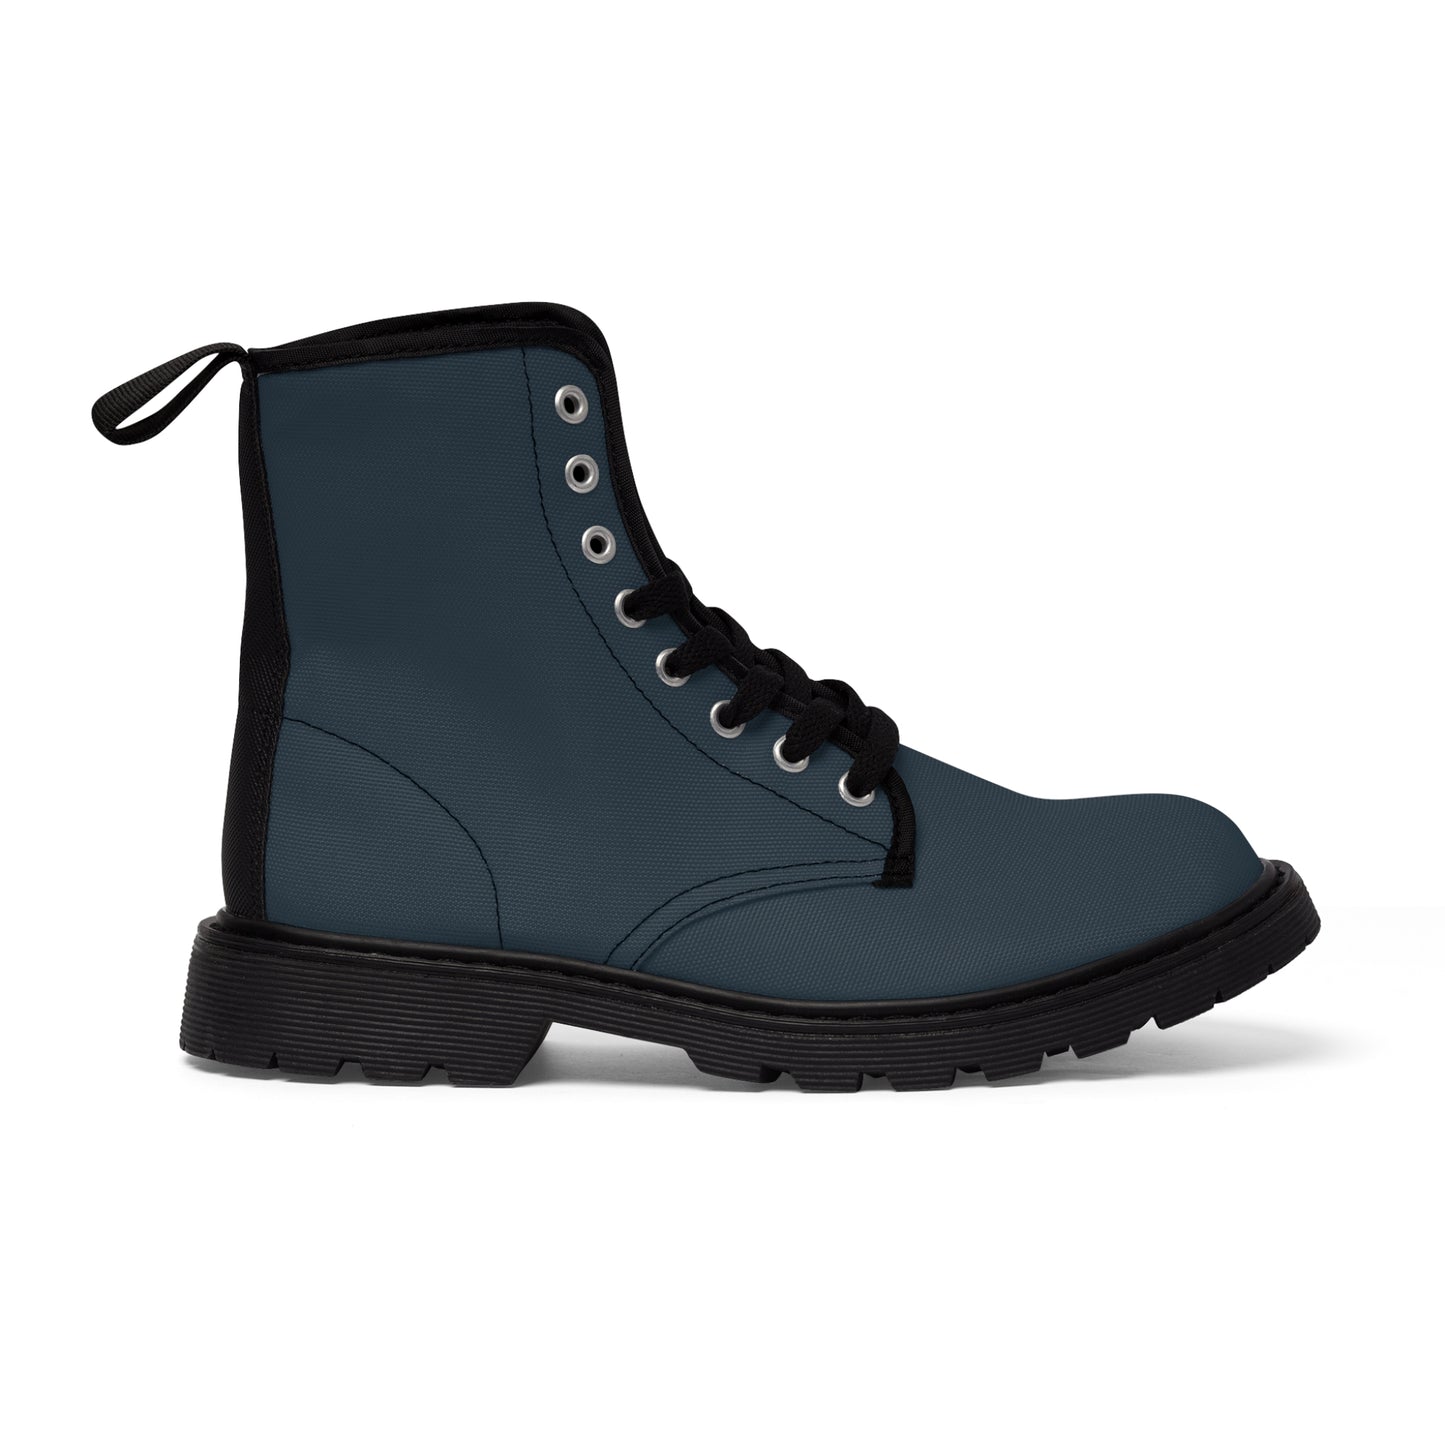 Men's Canvas Boots - Thundercloud Gray US 10.5 Black sole